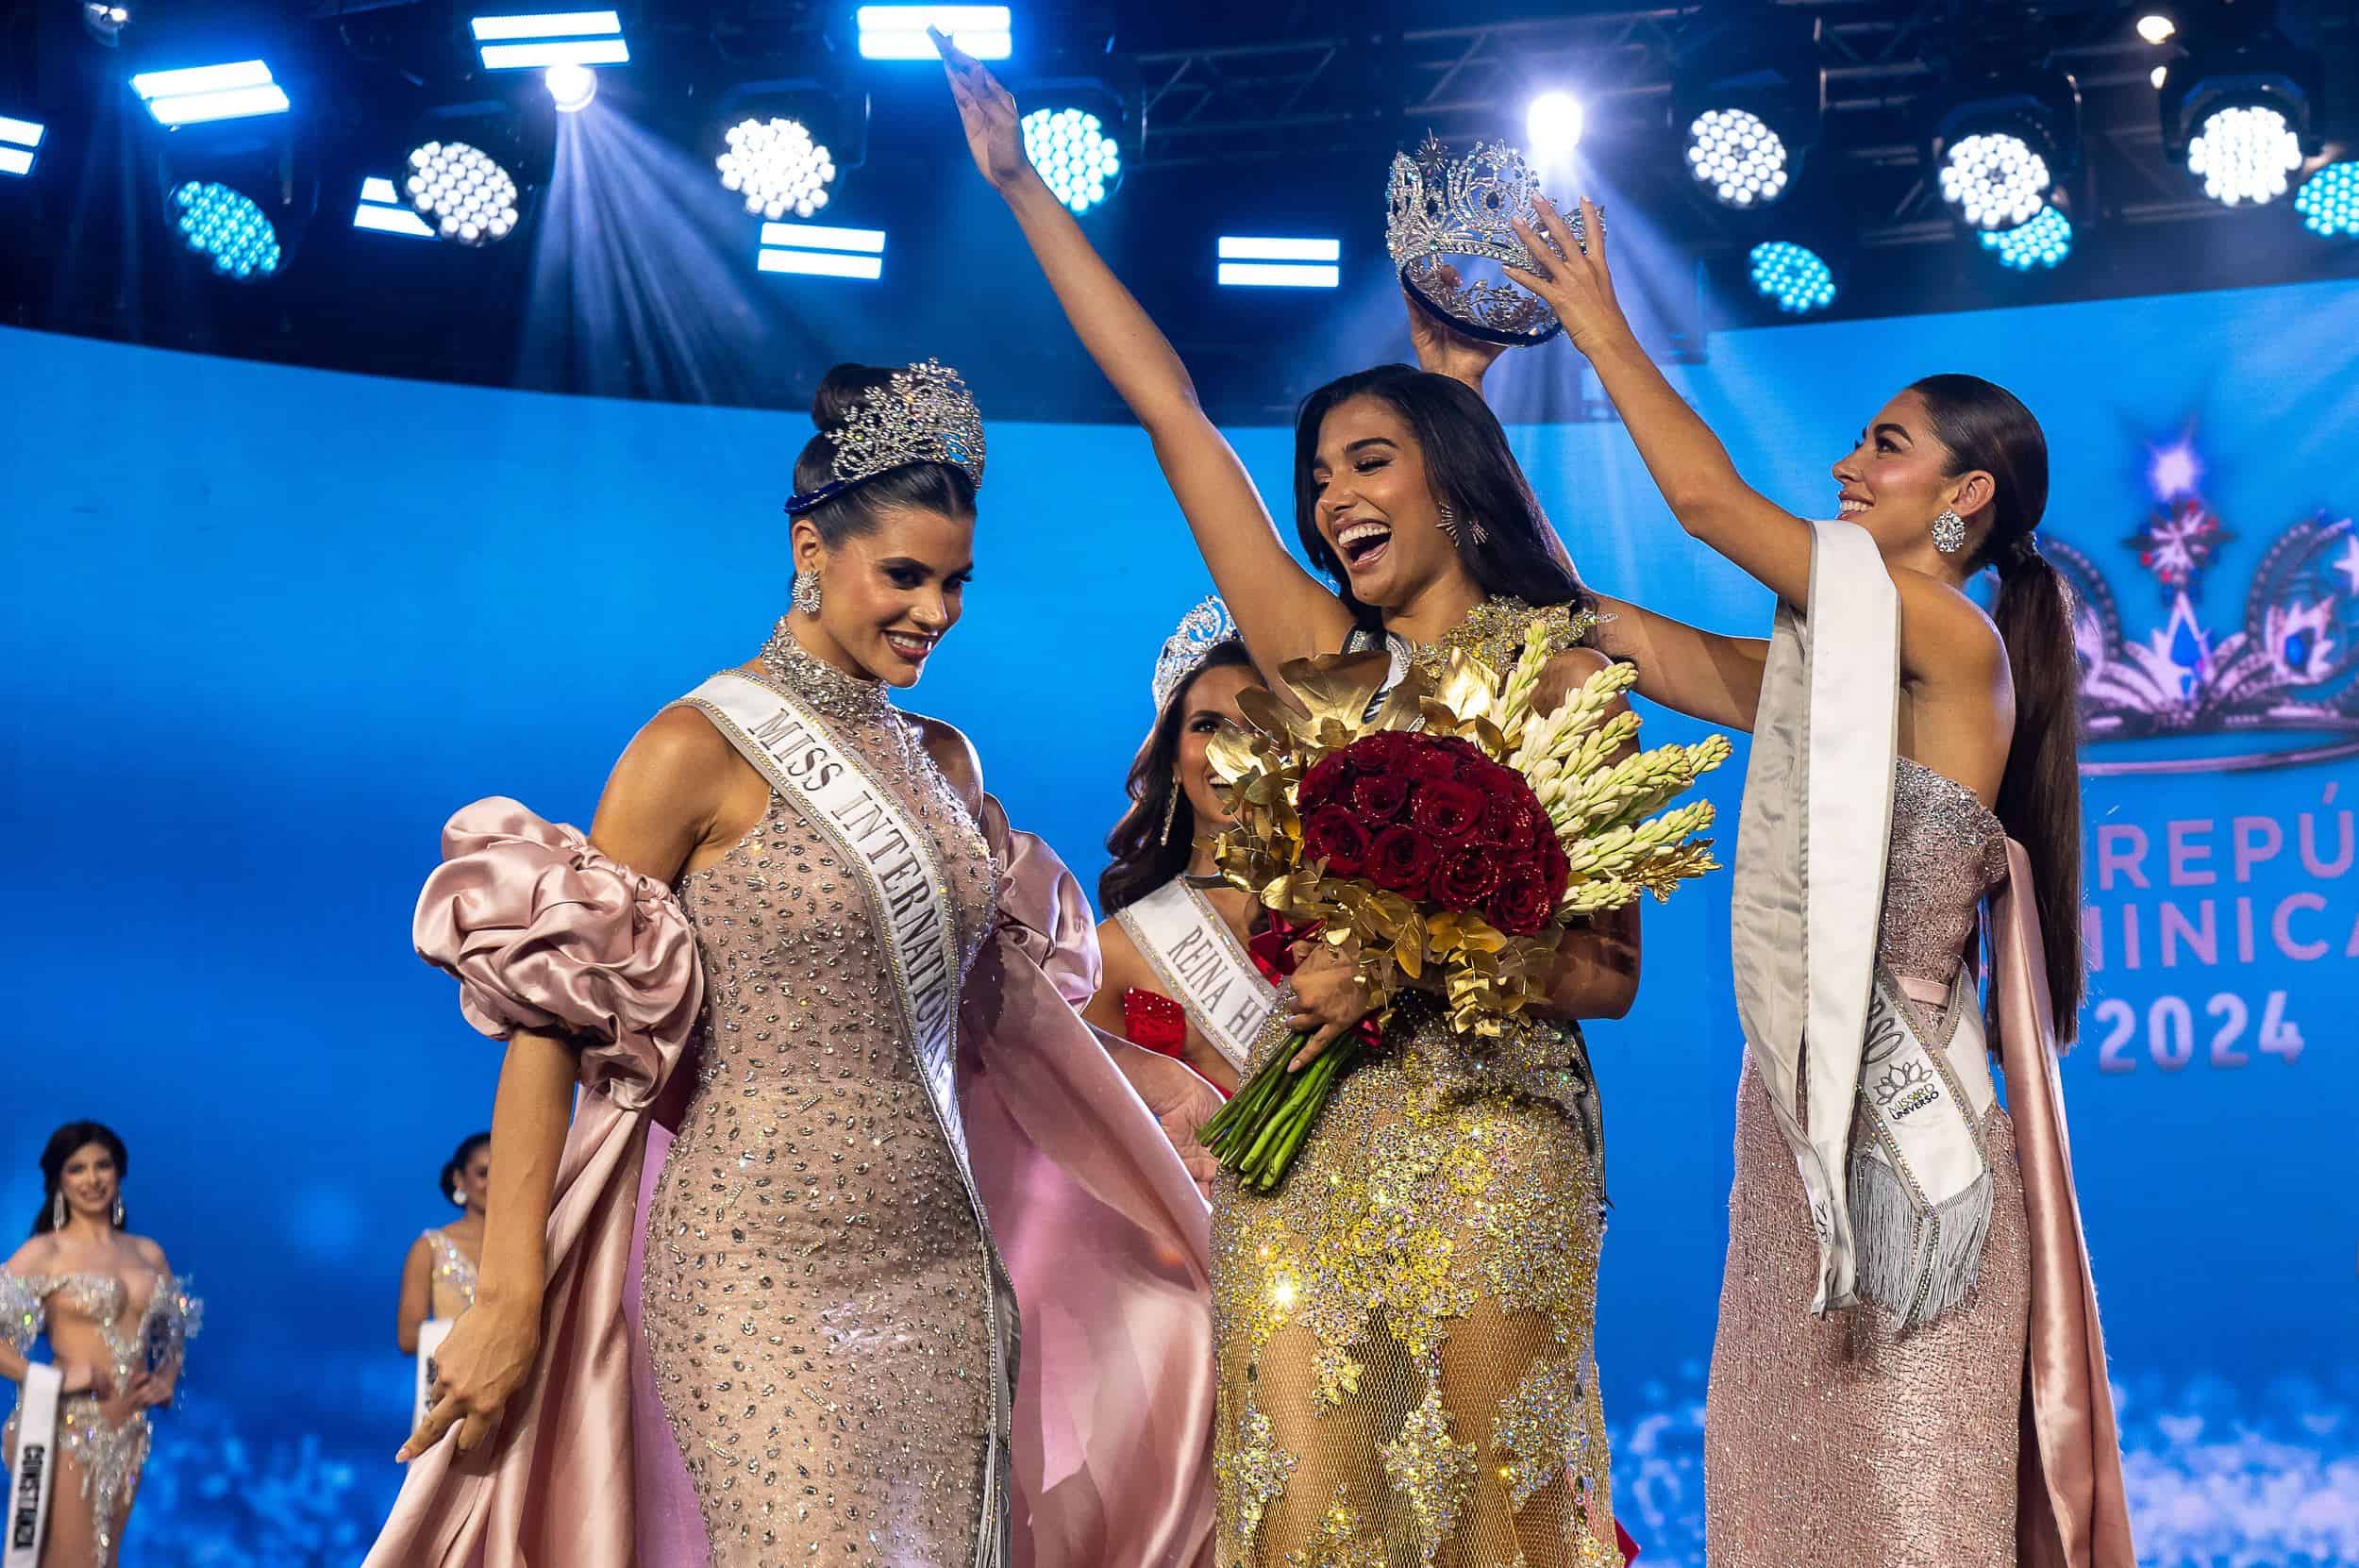 Celinee Santos recibe la corona del Miss República Dominicana 2024.